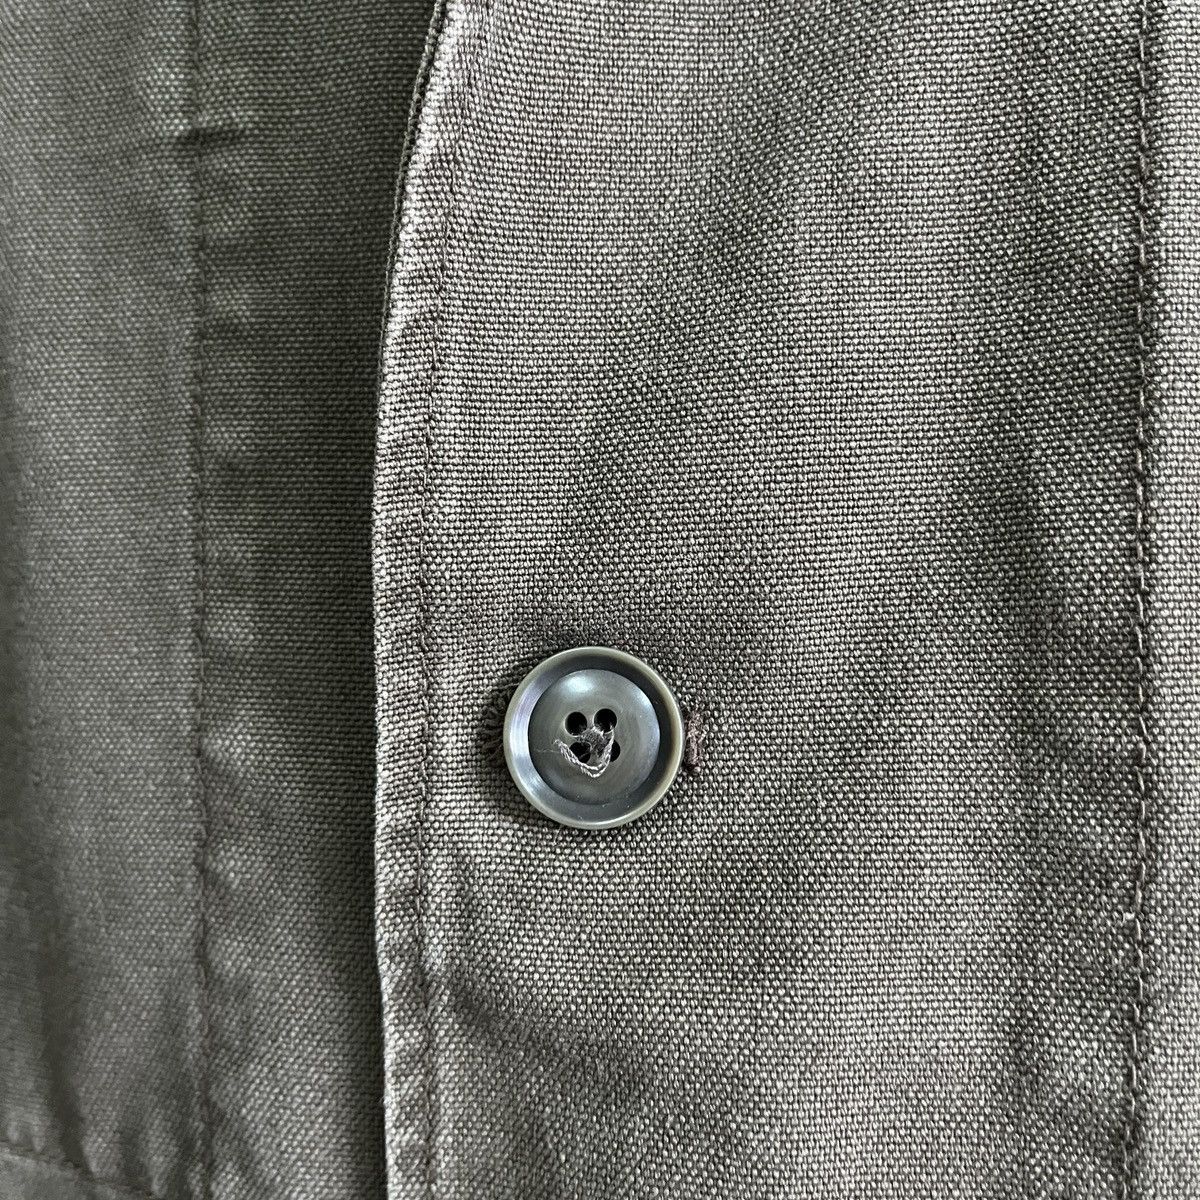 Uniqlo Chore Jacket Japan Size XL - 9